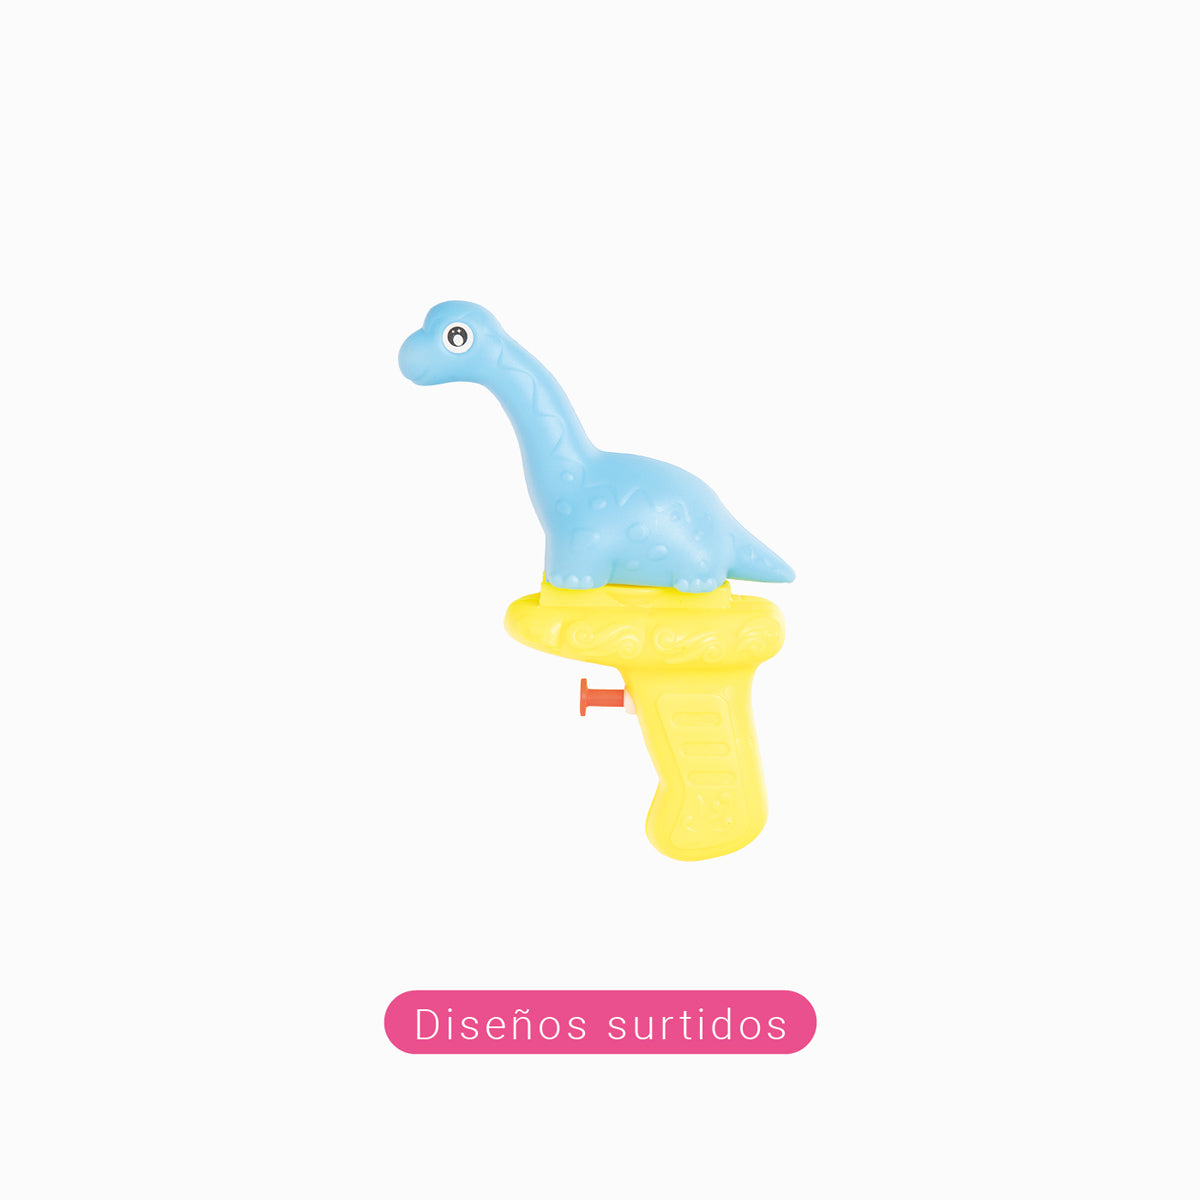 Piñata tod donner des dinosaures d'eau fourni des conceptions